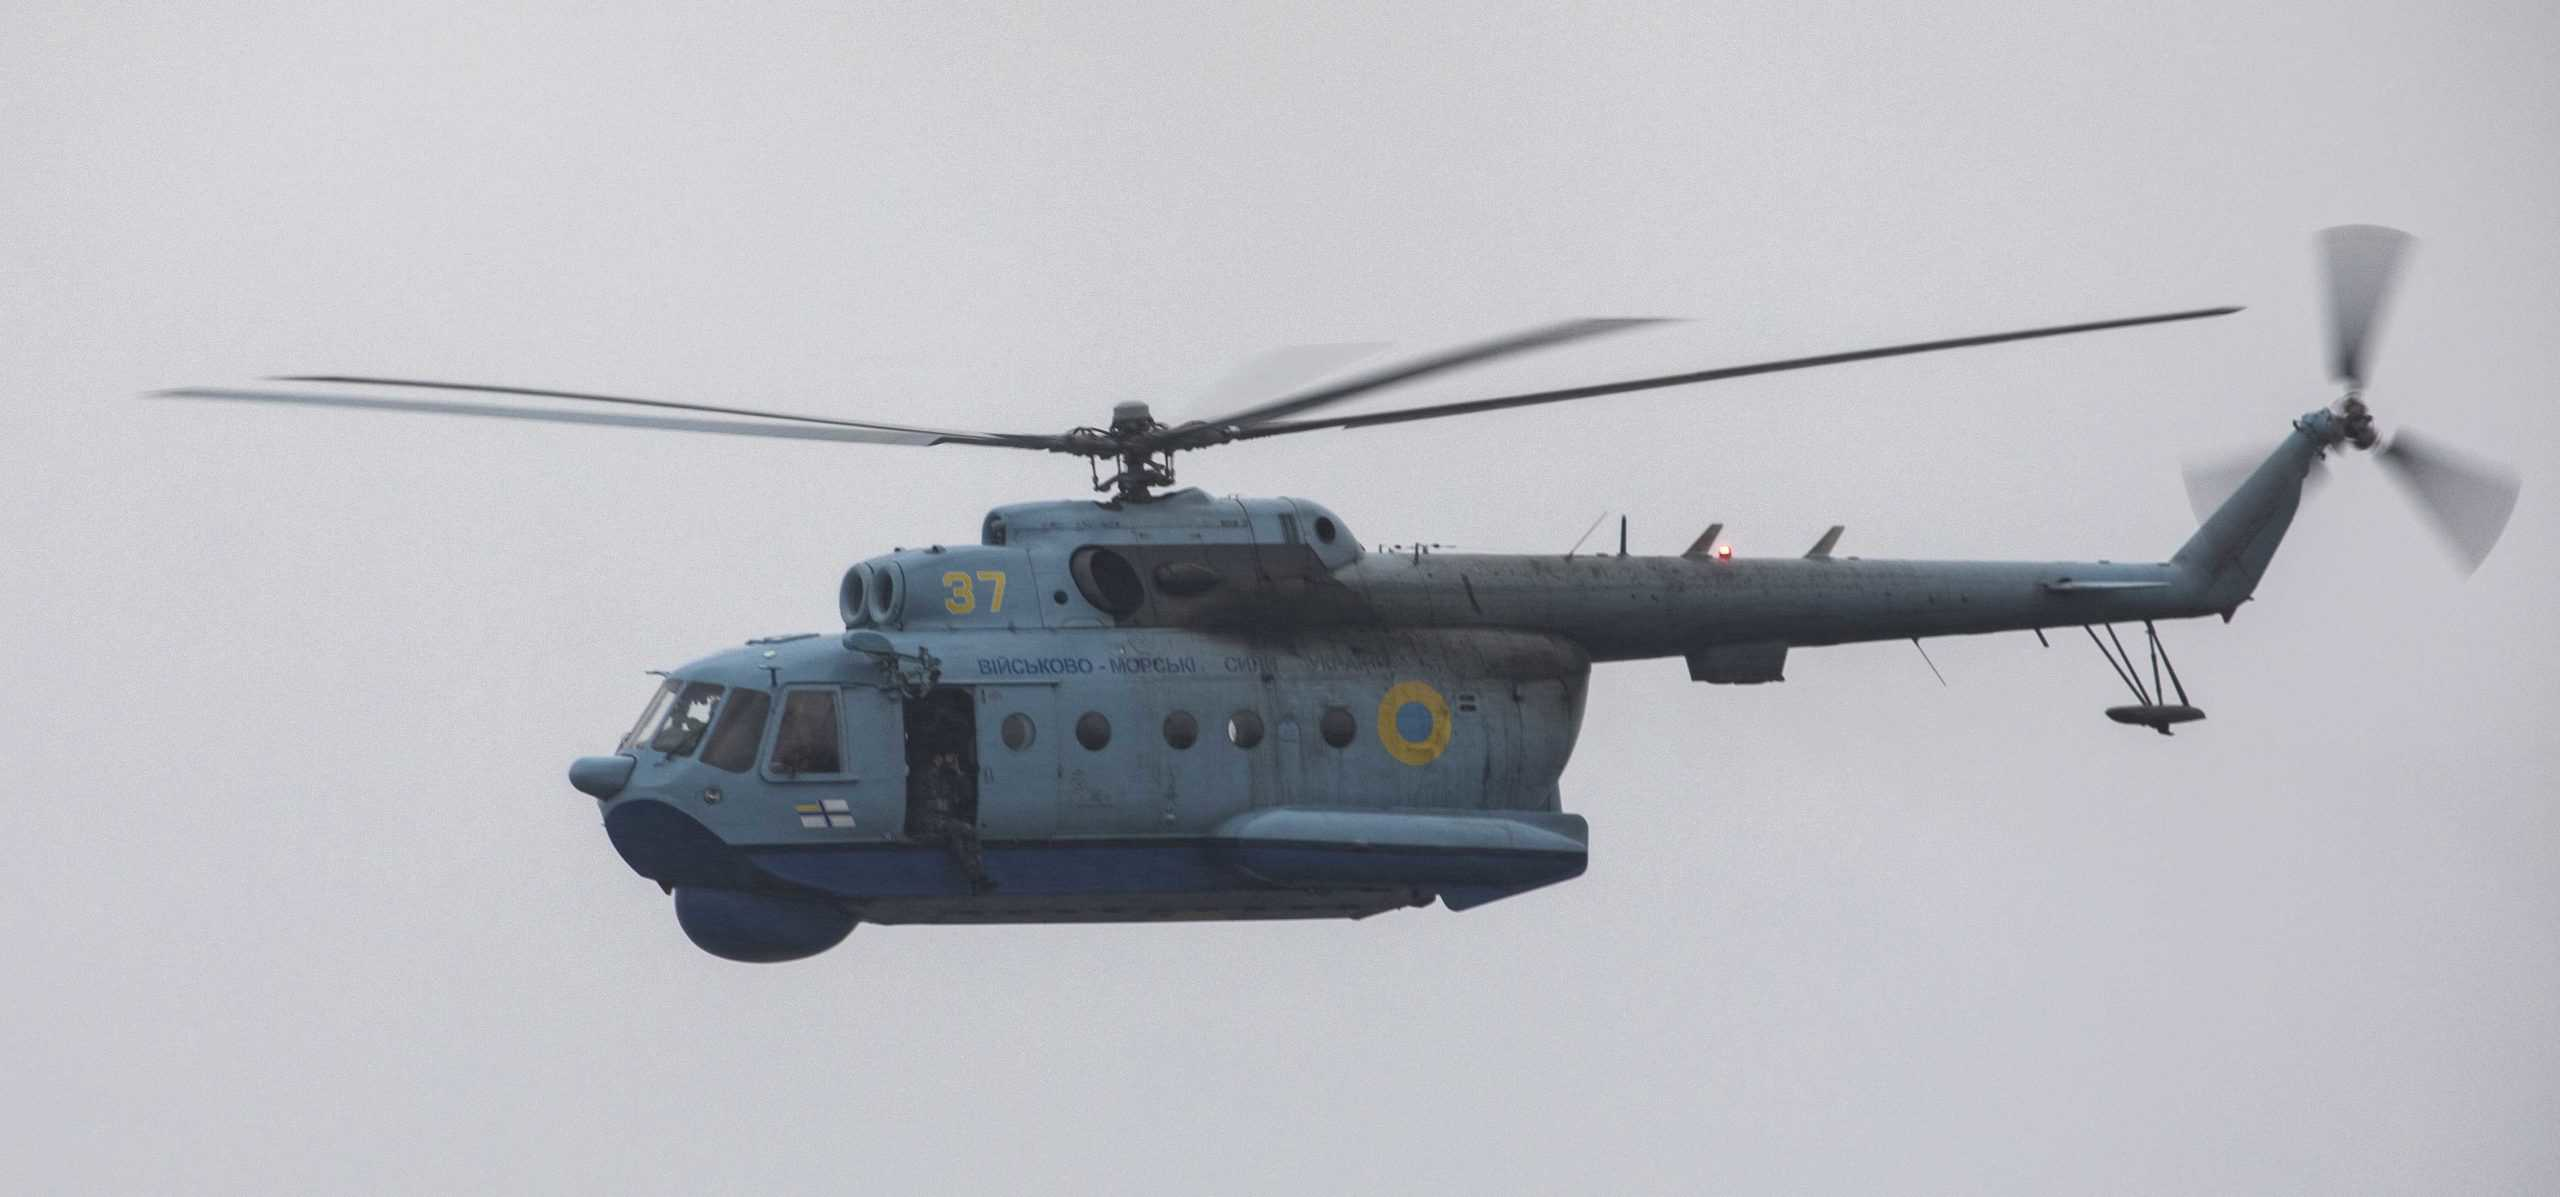 Вертолет Ми-14 морской авиации ВС Украины с бортовым номером 37 Фото: ВМФ США